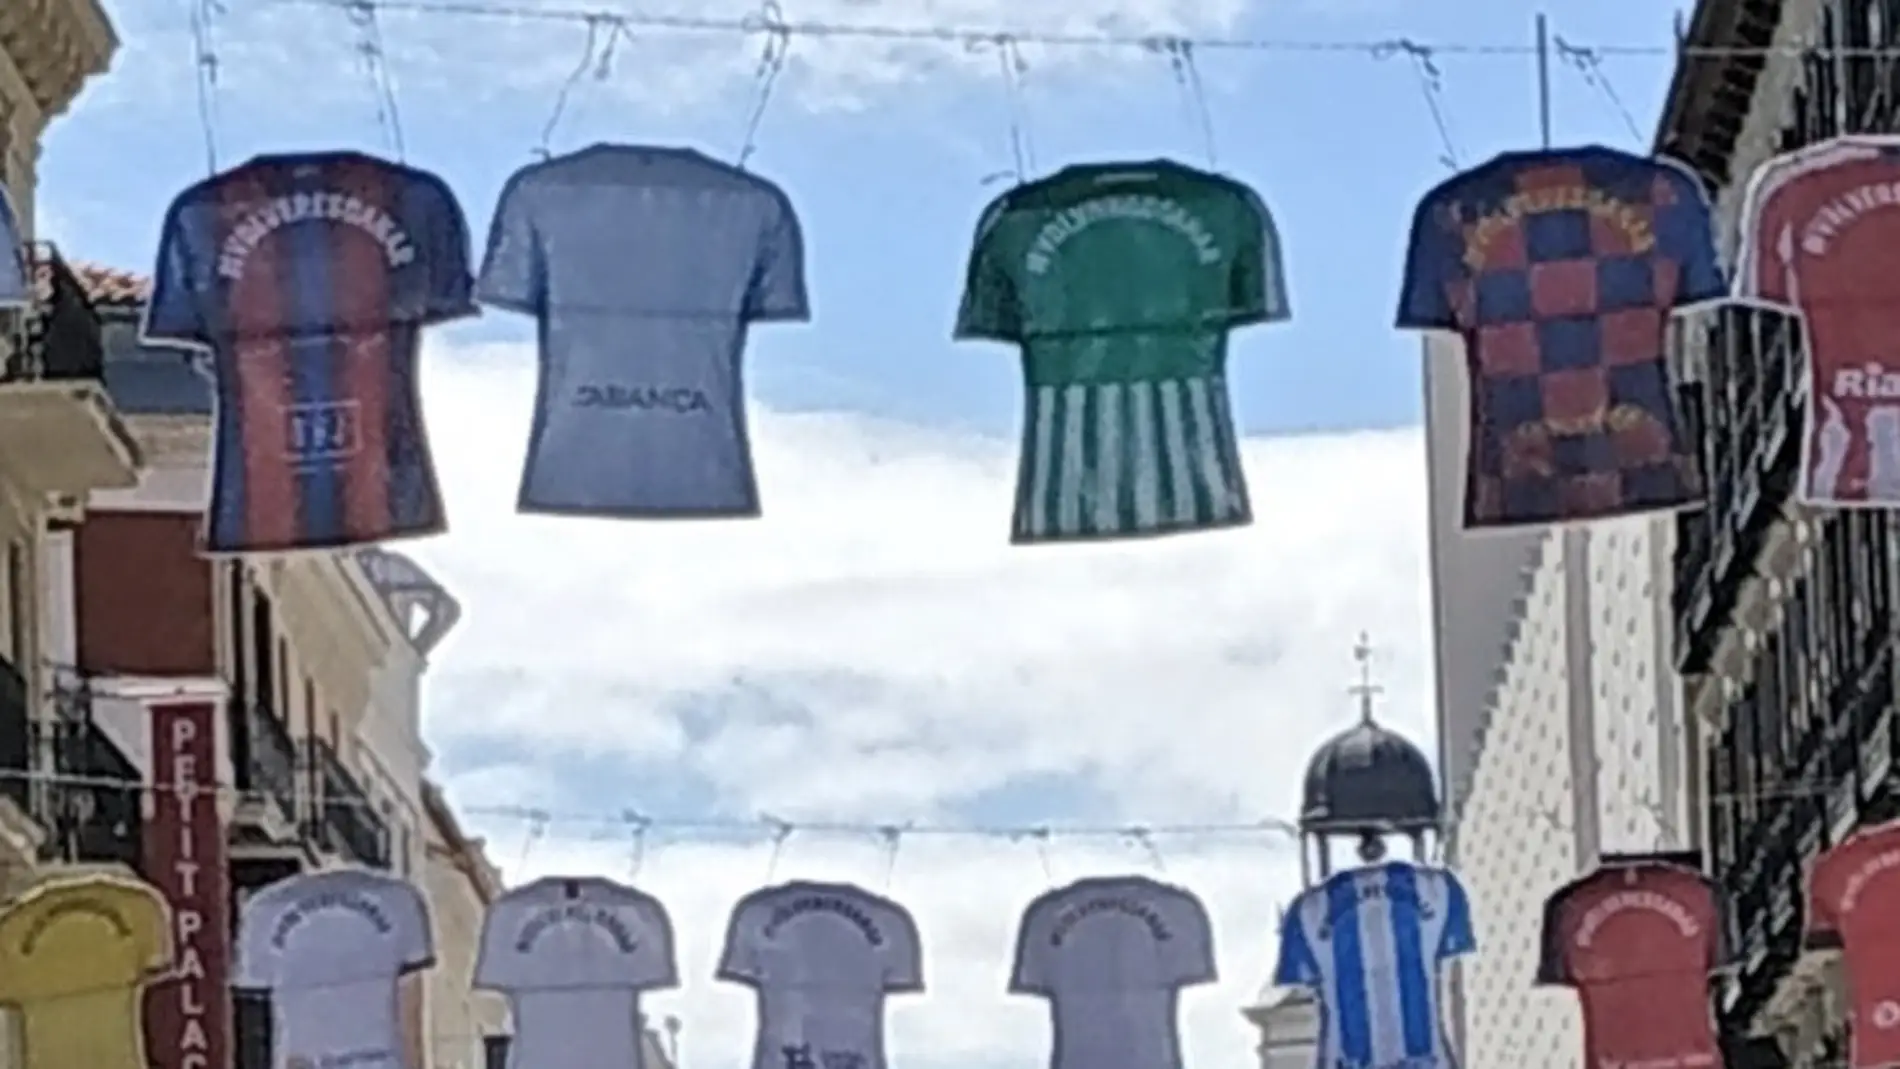 Calle preciados se viste con las camisetas de primera división